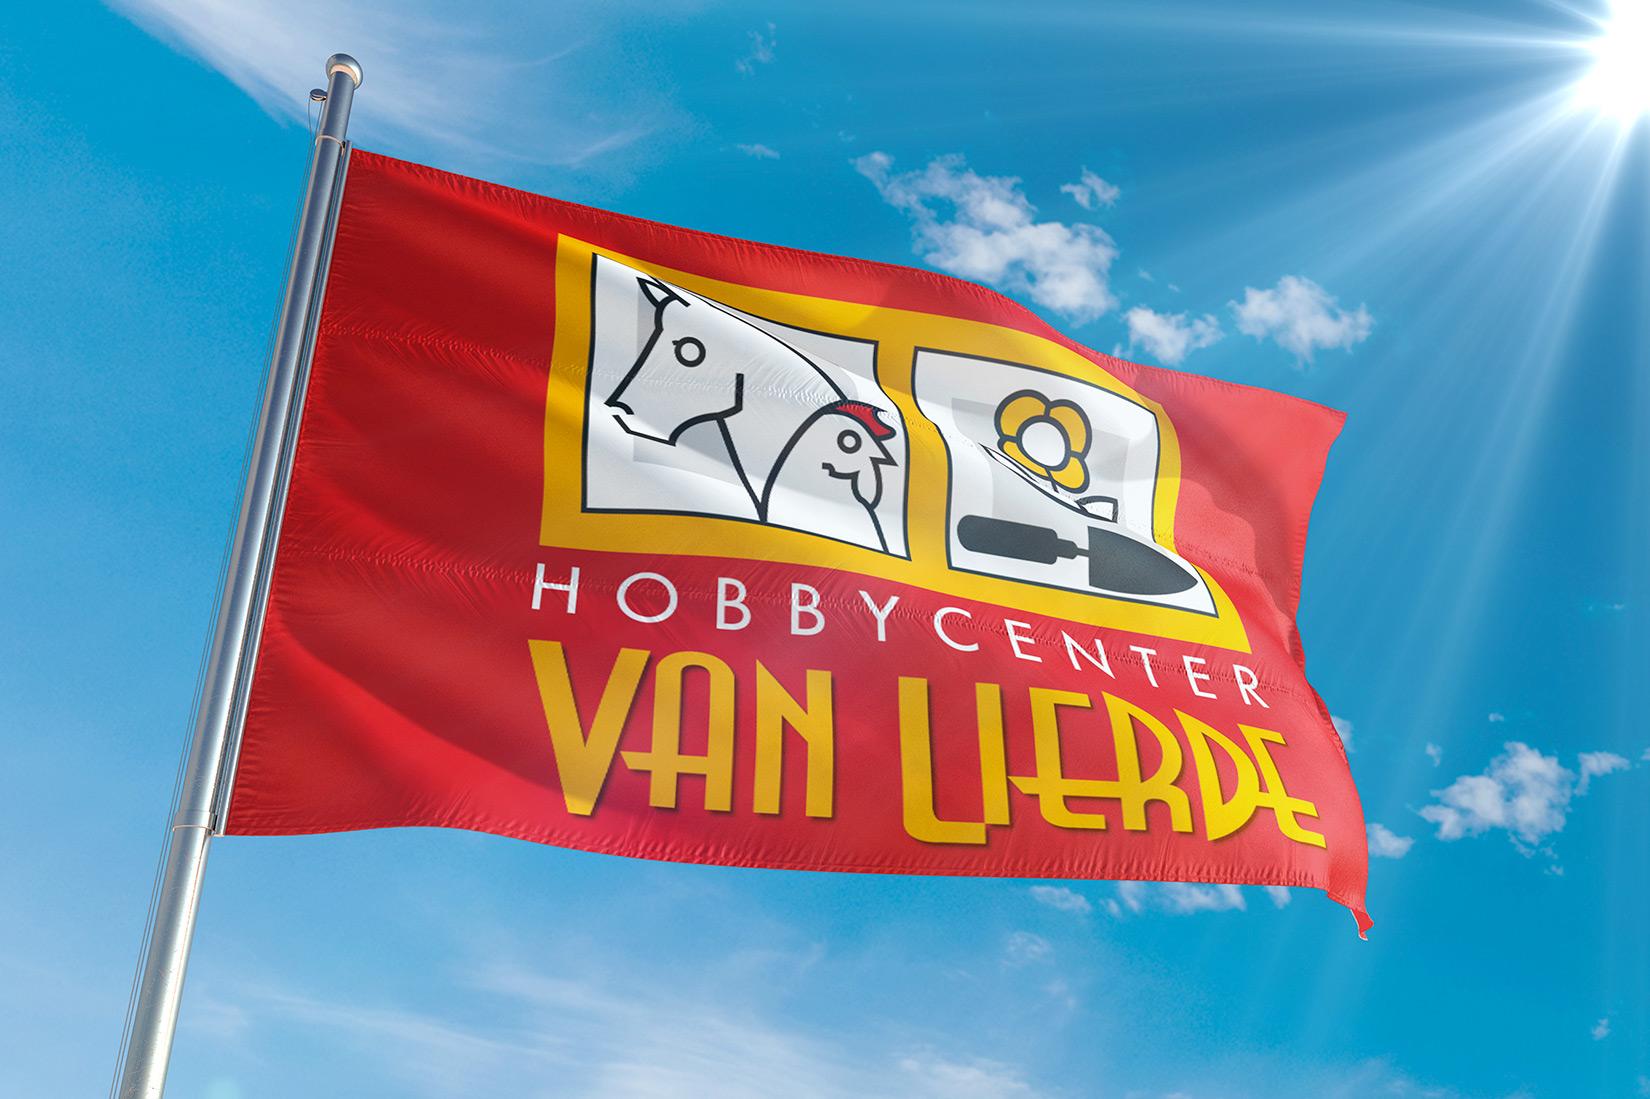 Hobbycenter Van Lierde